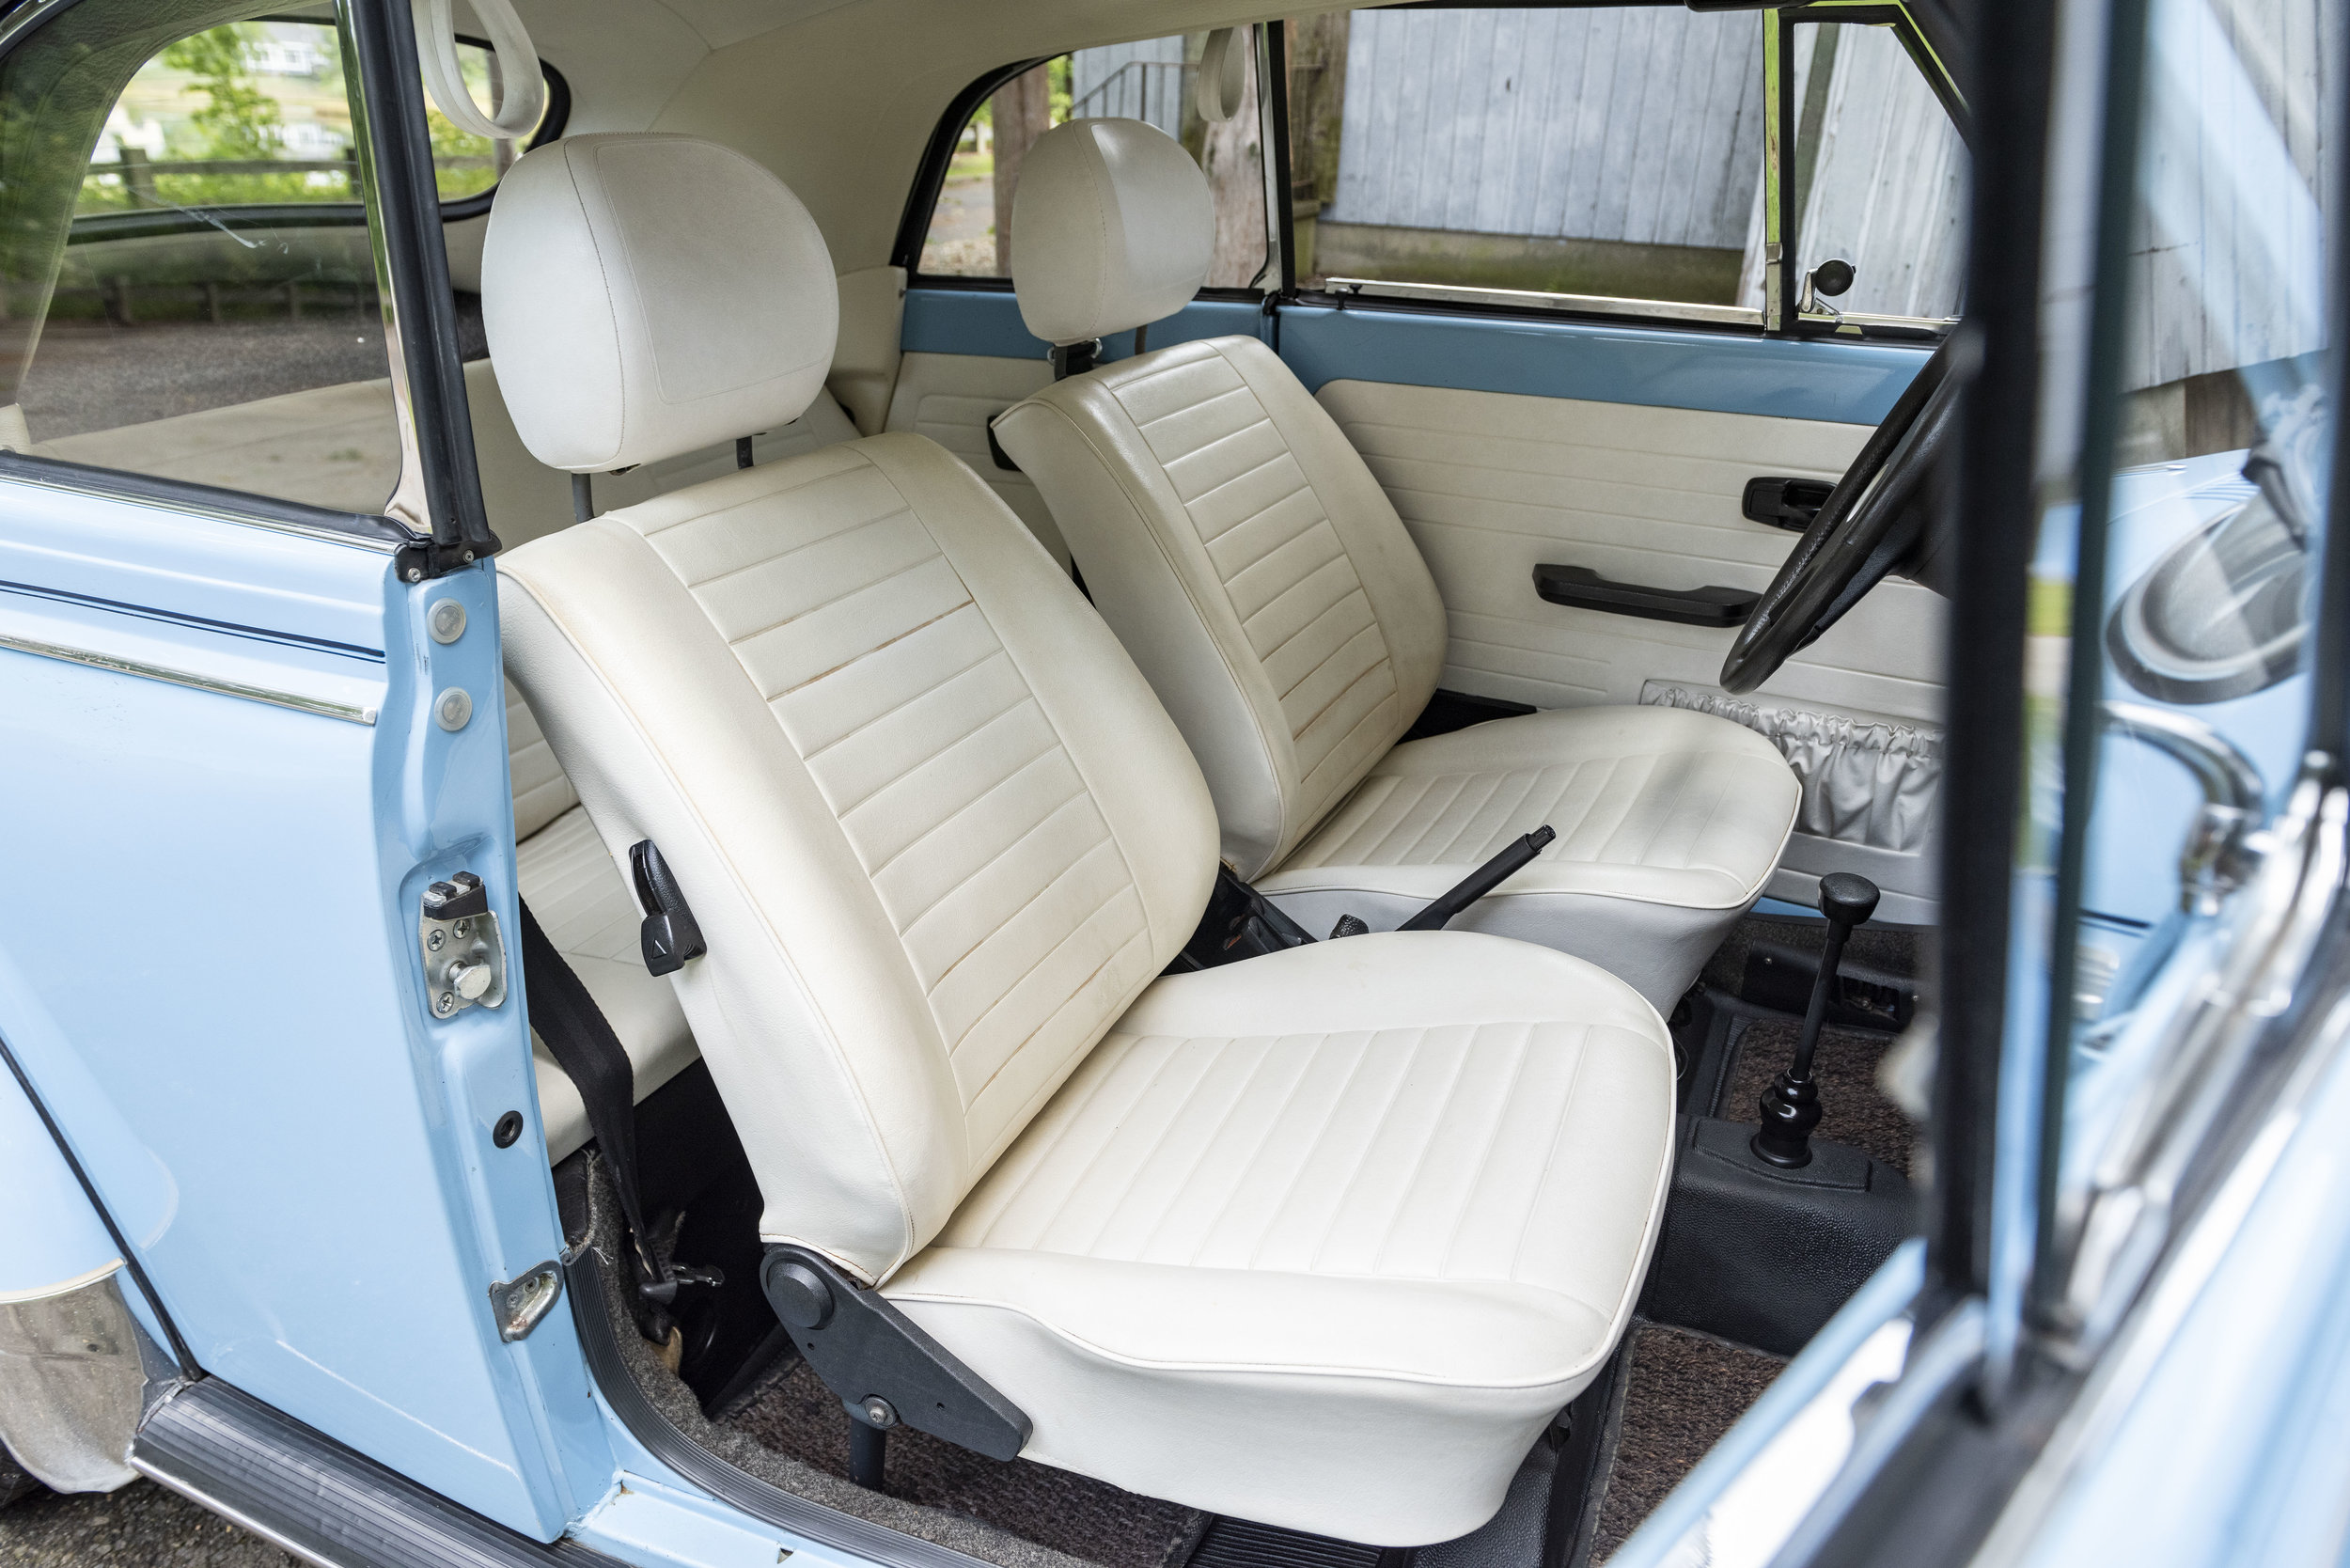 VW Bug Interior_015.JPG